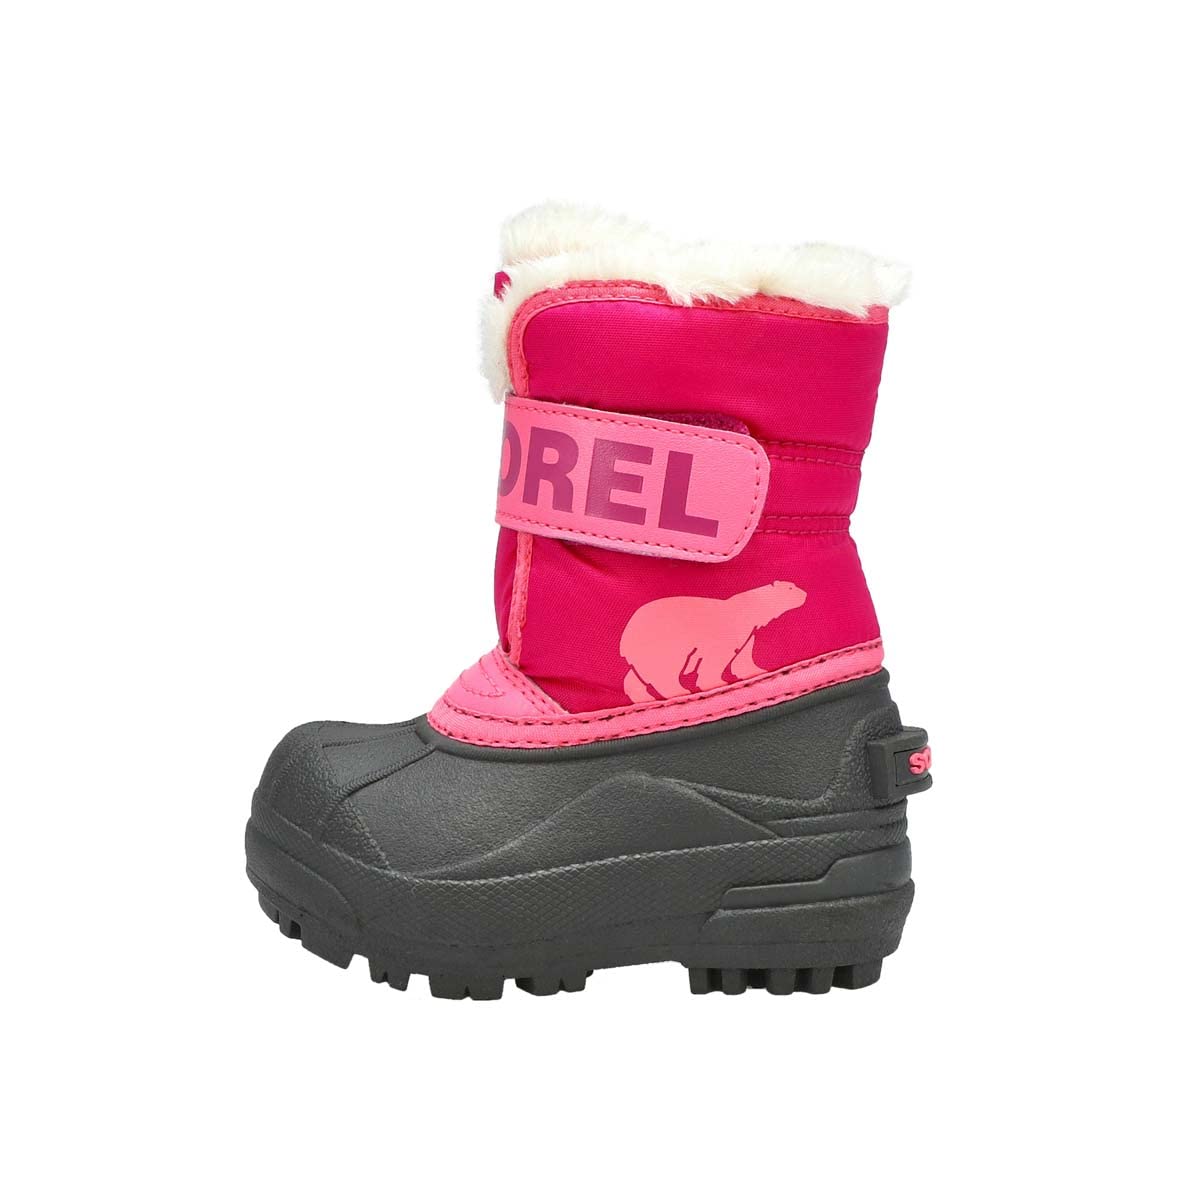 Sorel KIDS SNOW COMMANDER Schneestiefel für Unisex Kinder, Rot (Tropic Pink x Deep Blush) - Toddler, 22 EU